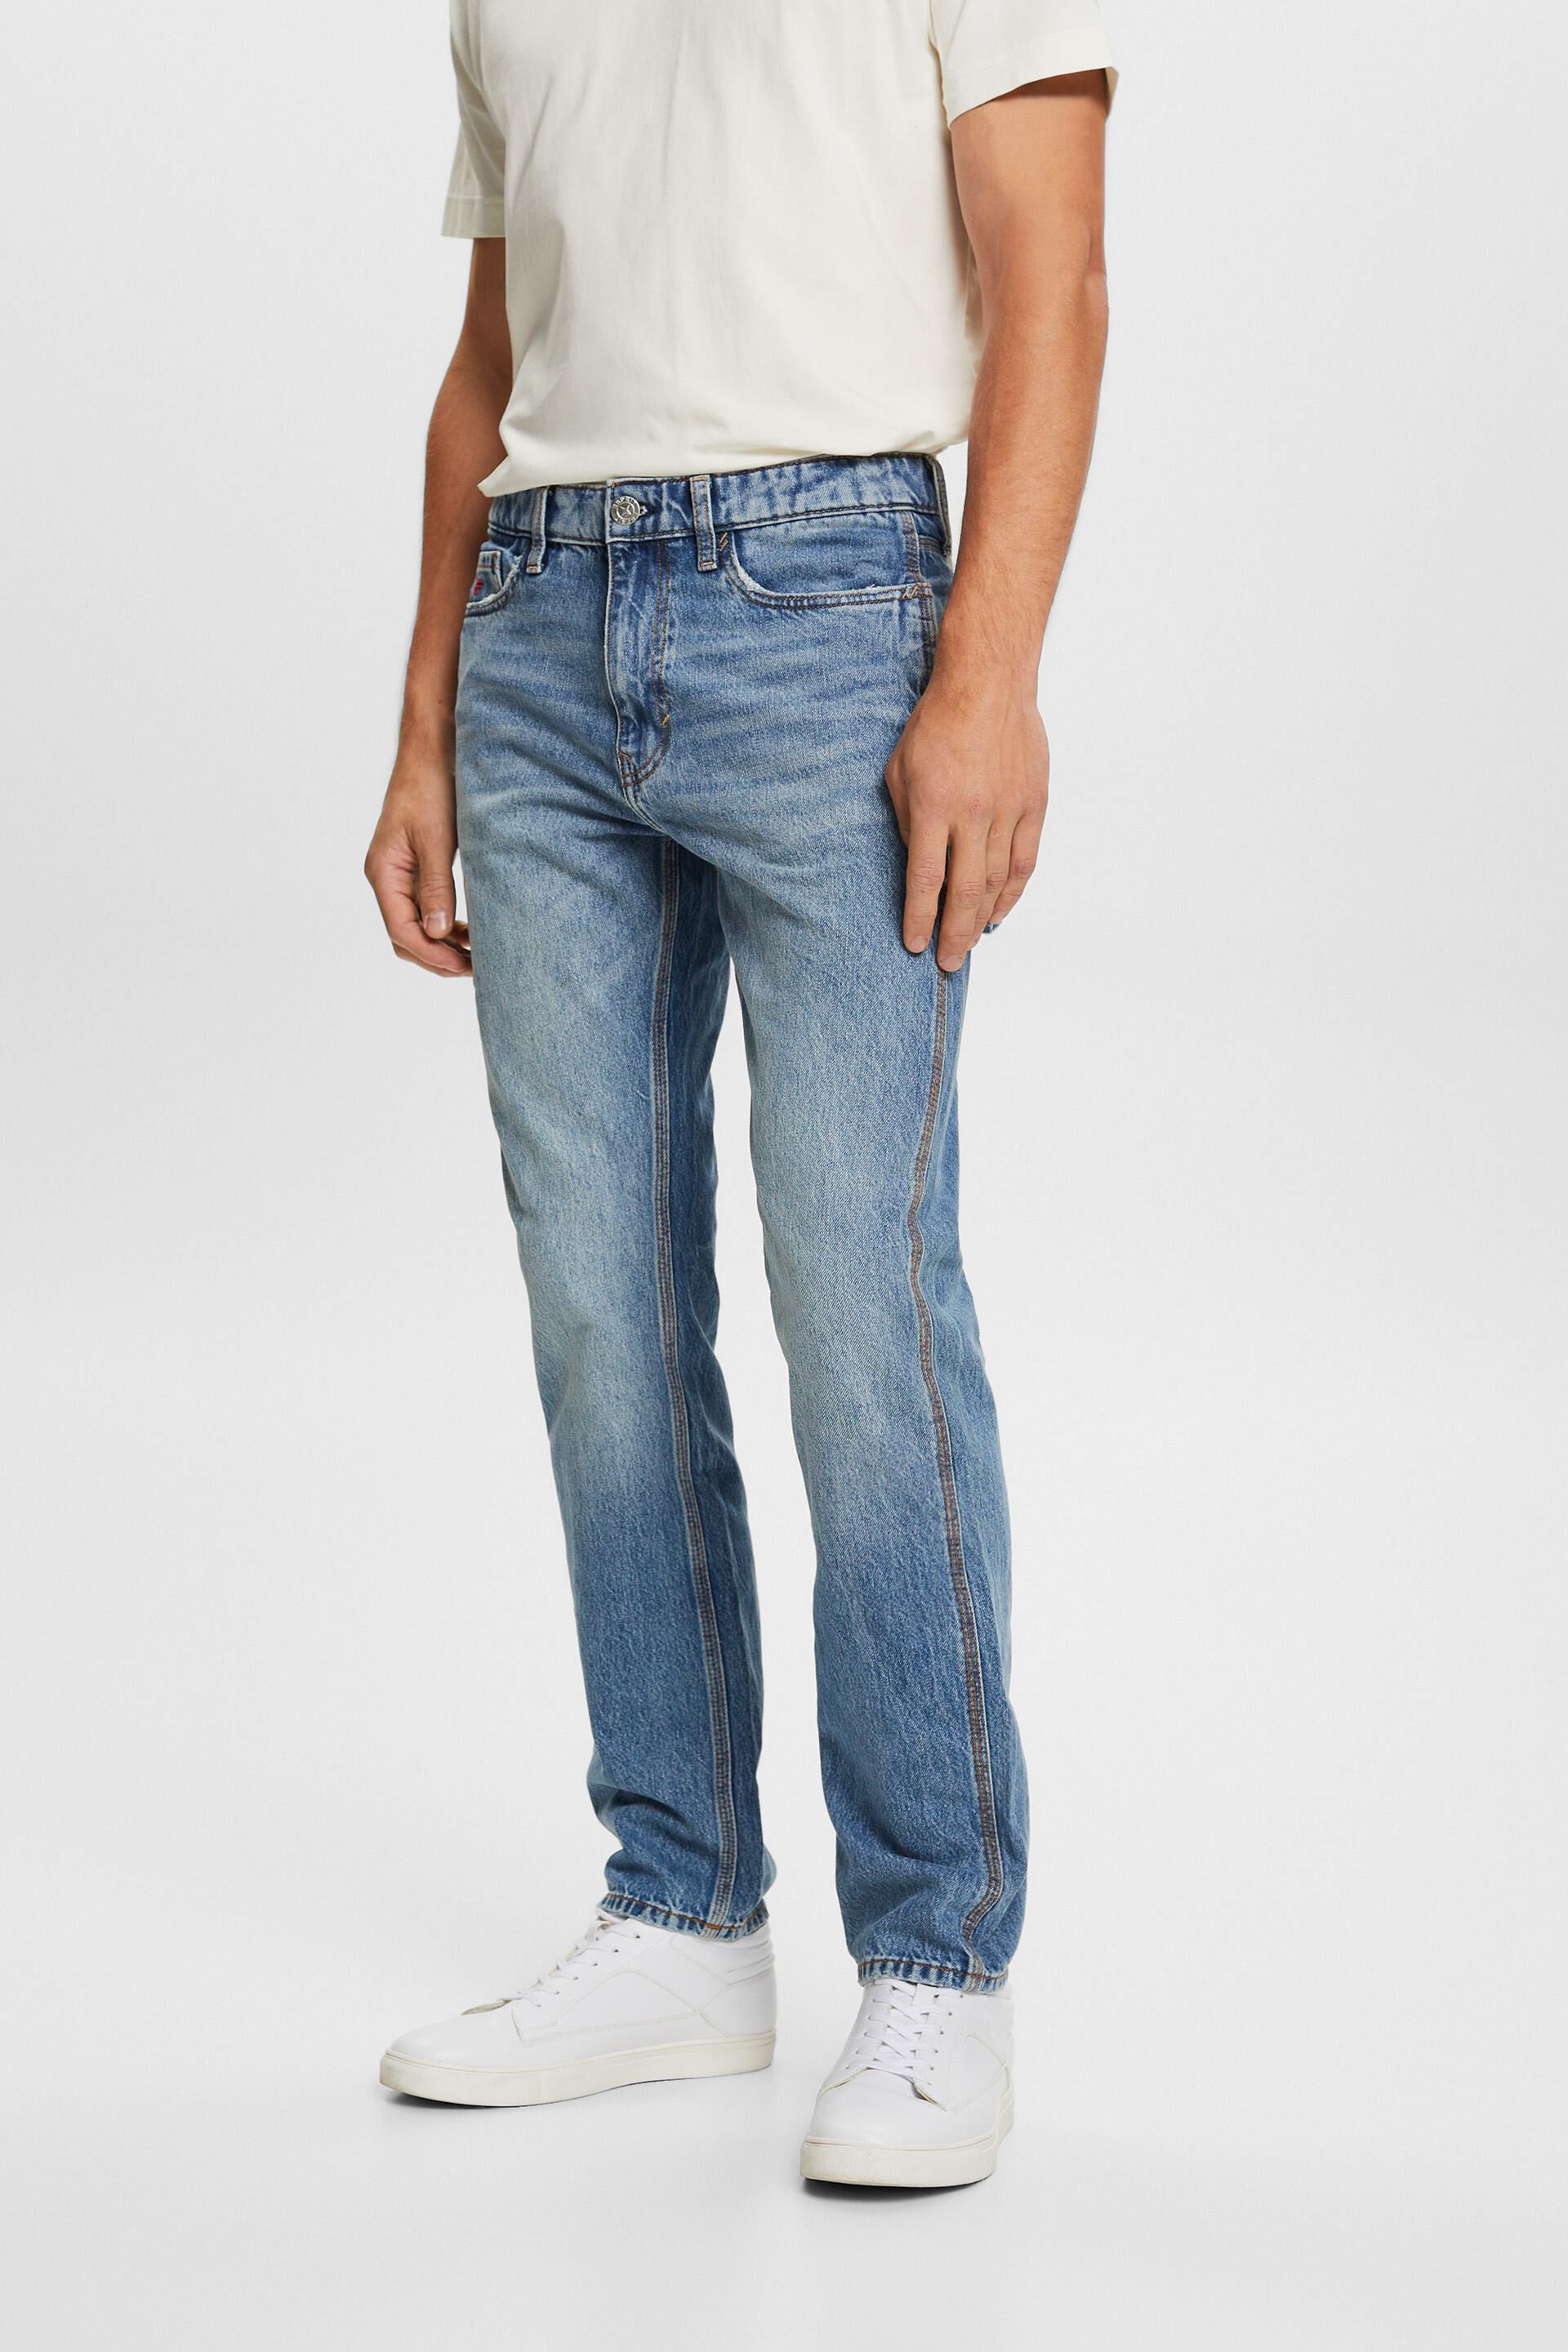 Esprit 100% jeans, cotton straight fit Carpenter